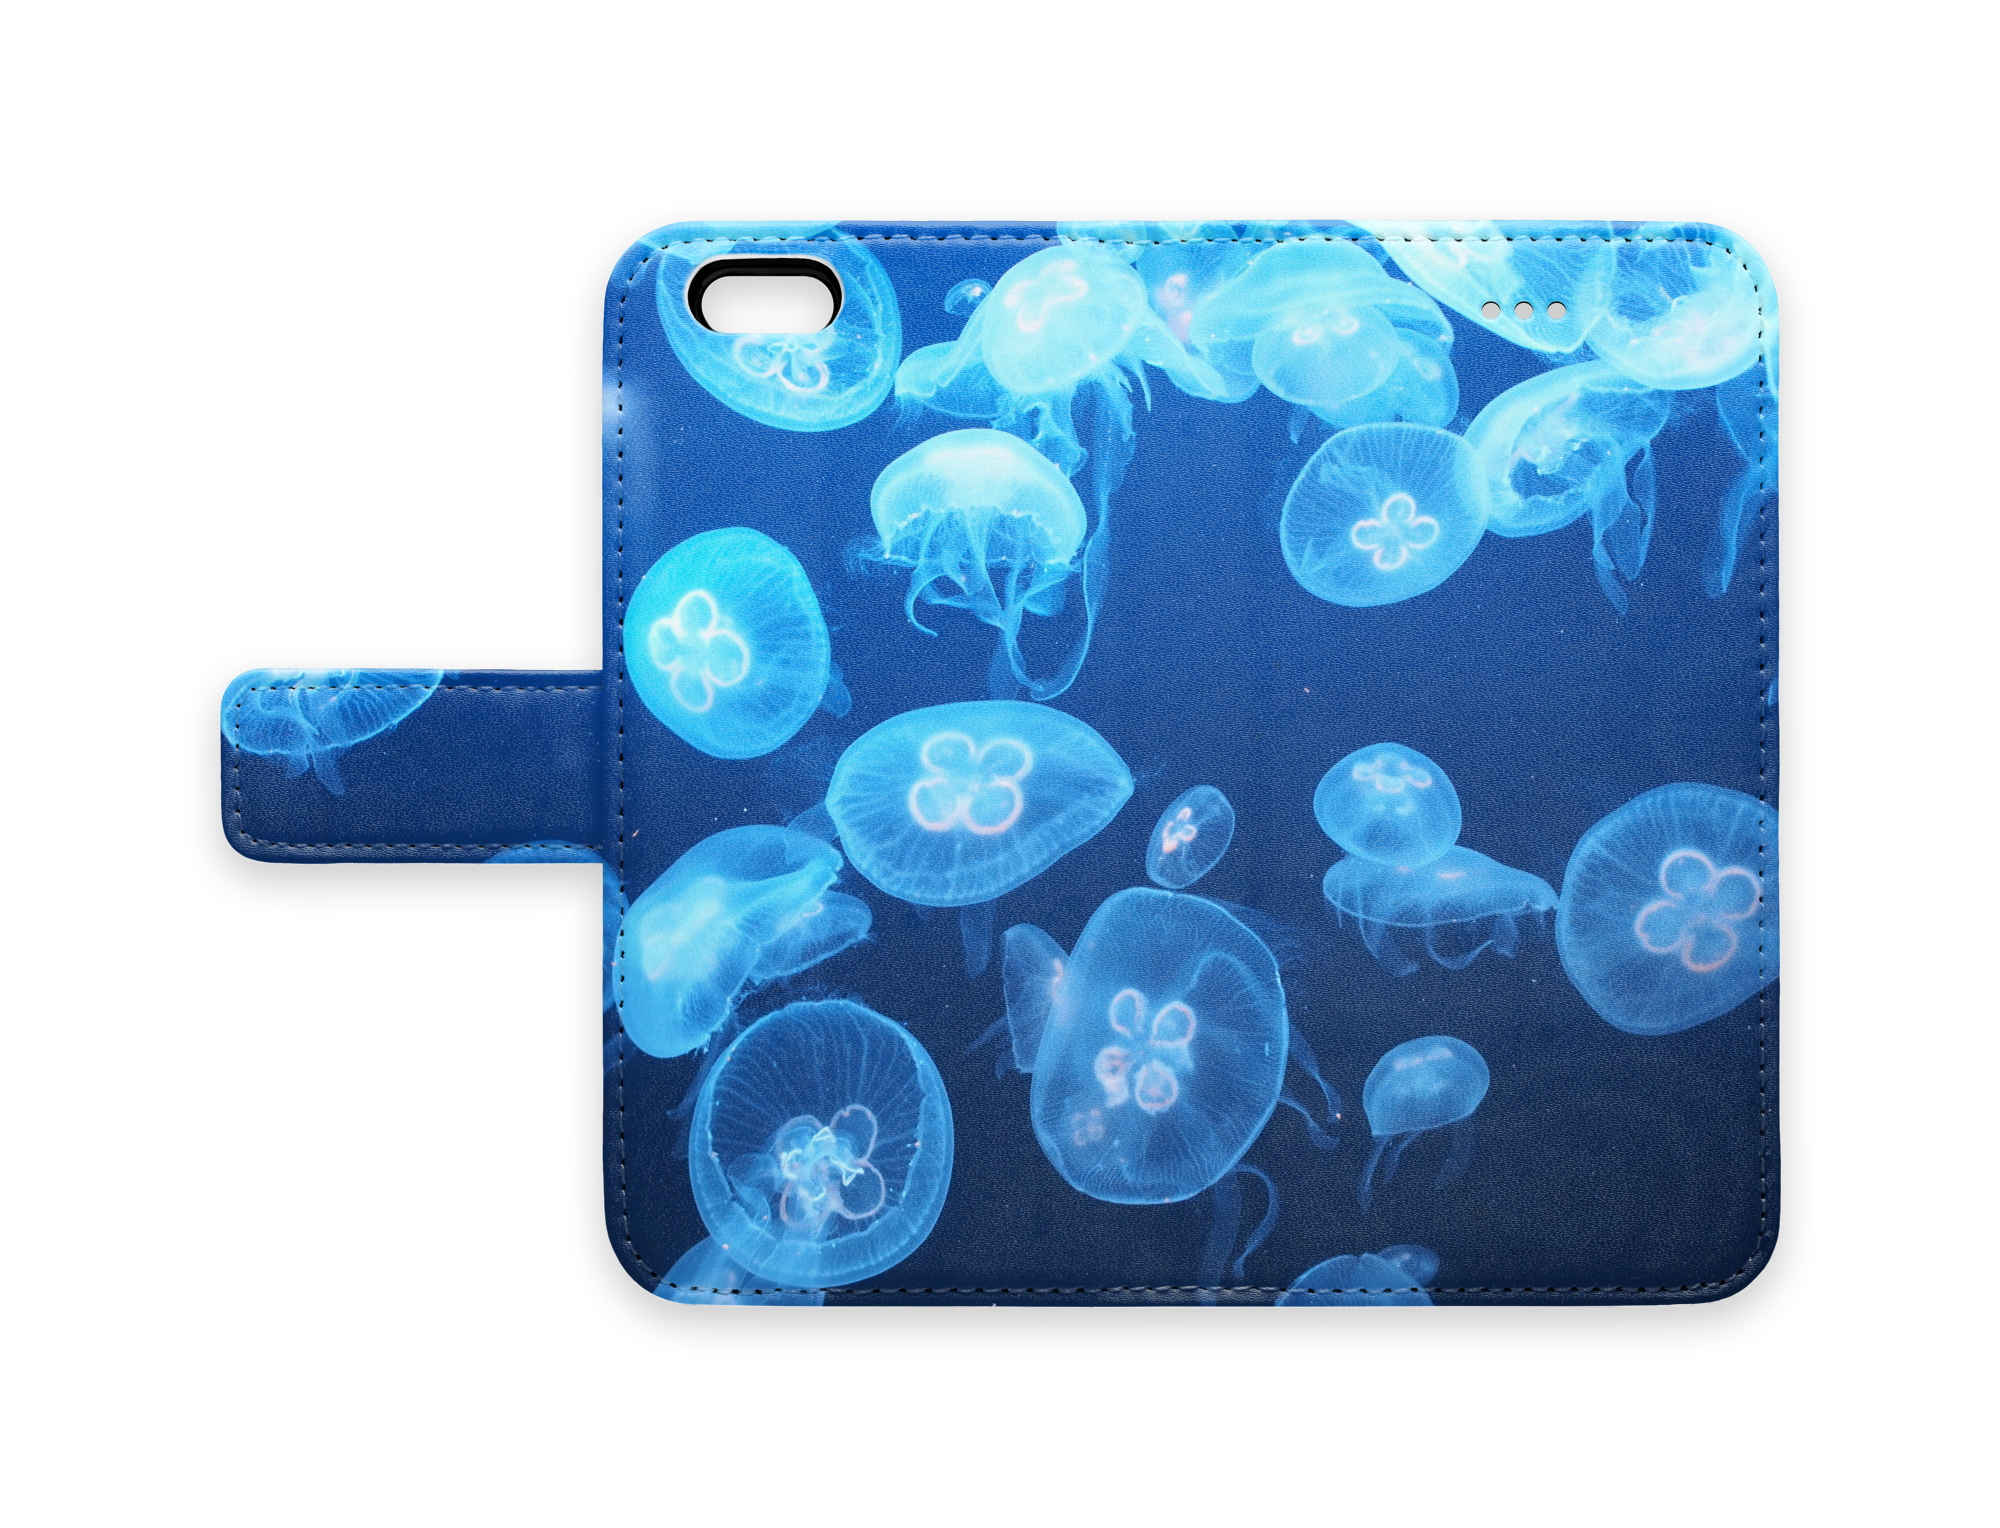 全面ブルーのミズクラゲ柄が爽やかな手帳型iPhoneケース "water jelly"